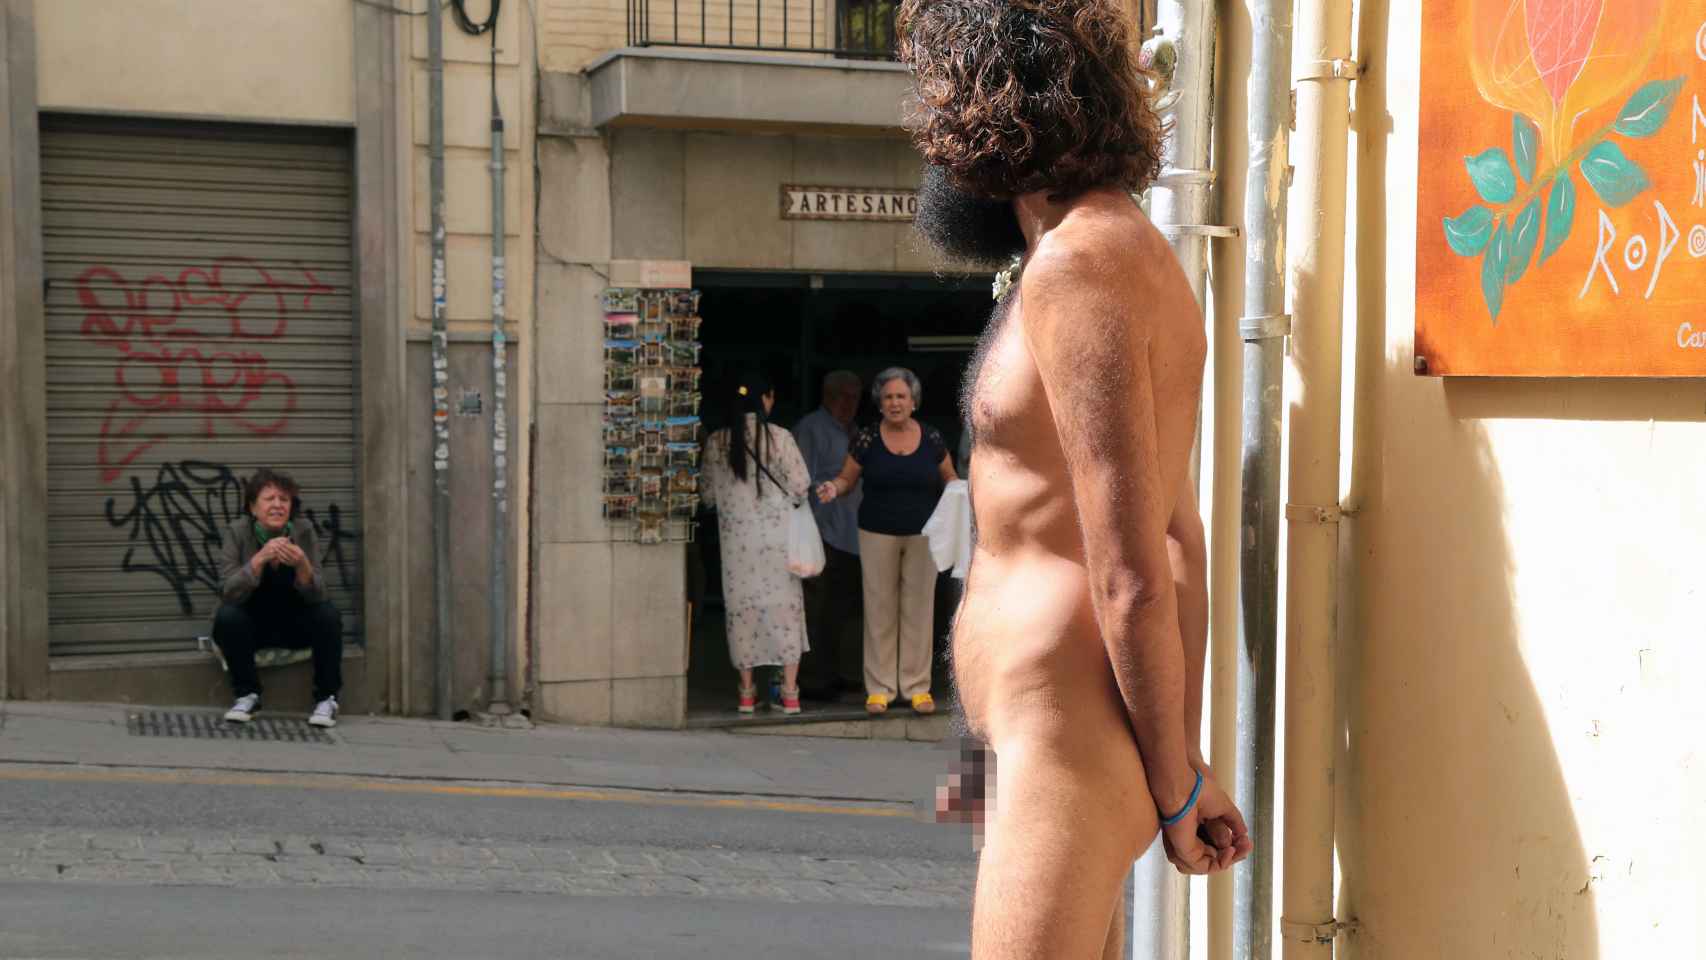 Olmo totalmente desnudo en plena calle de Granada.